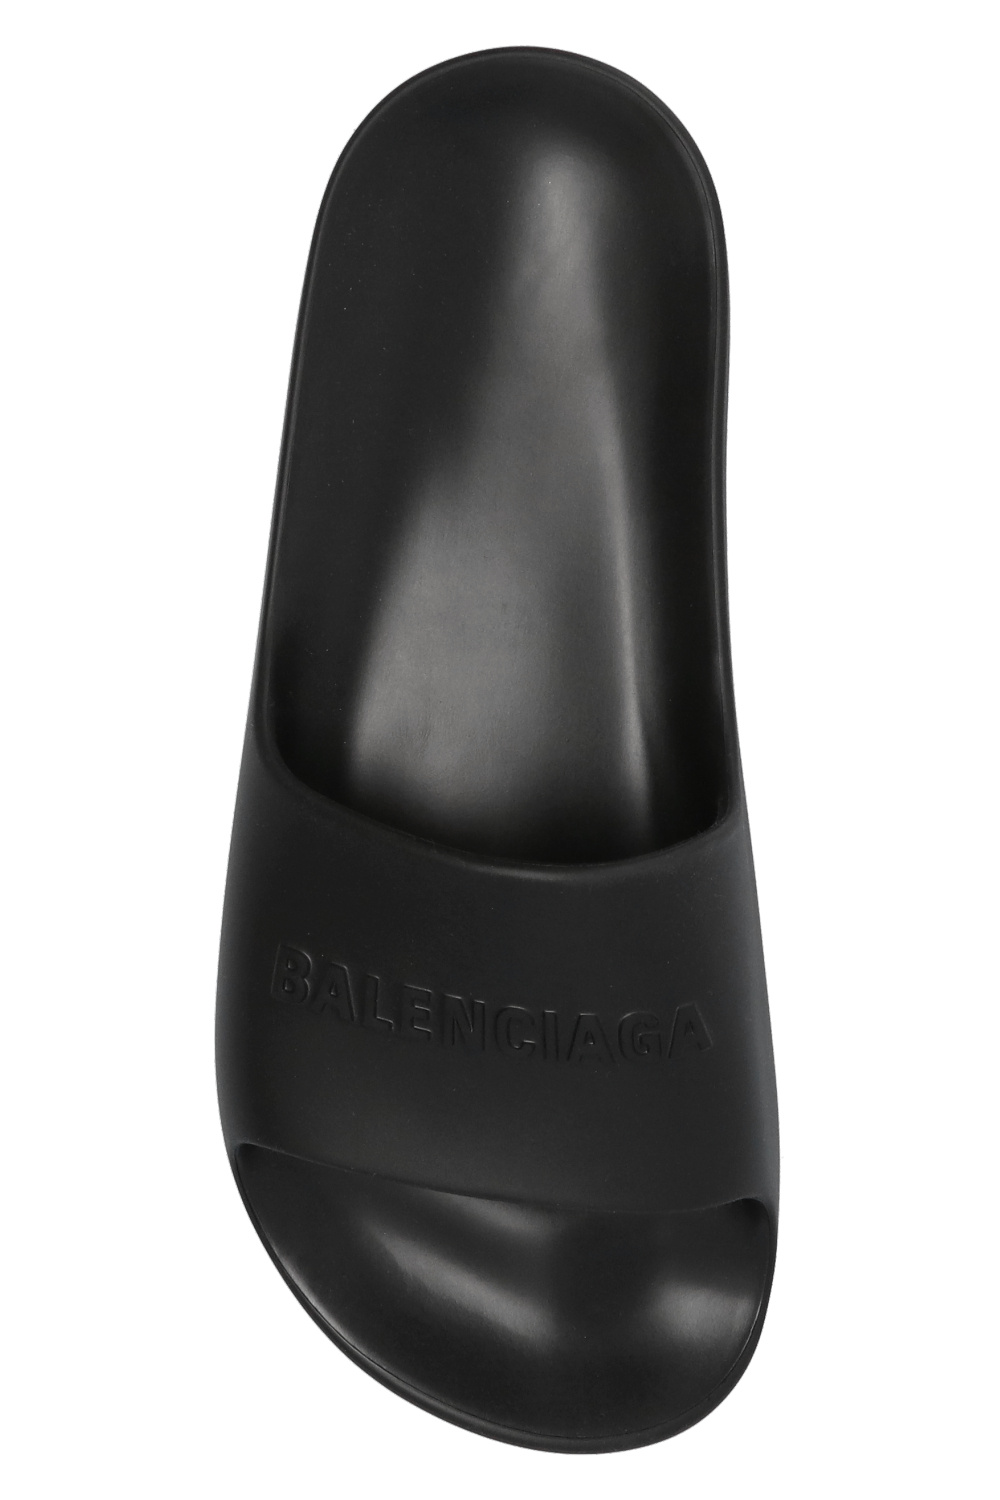 Balenciaga 'zapatillas de running The North Face competición talla 42 mejor valoradas